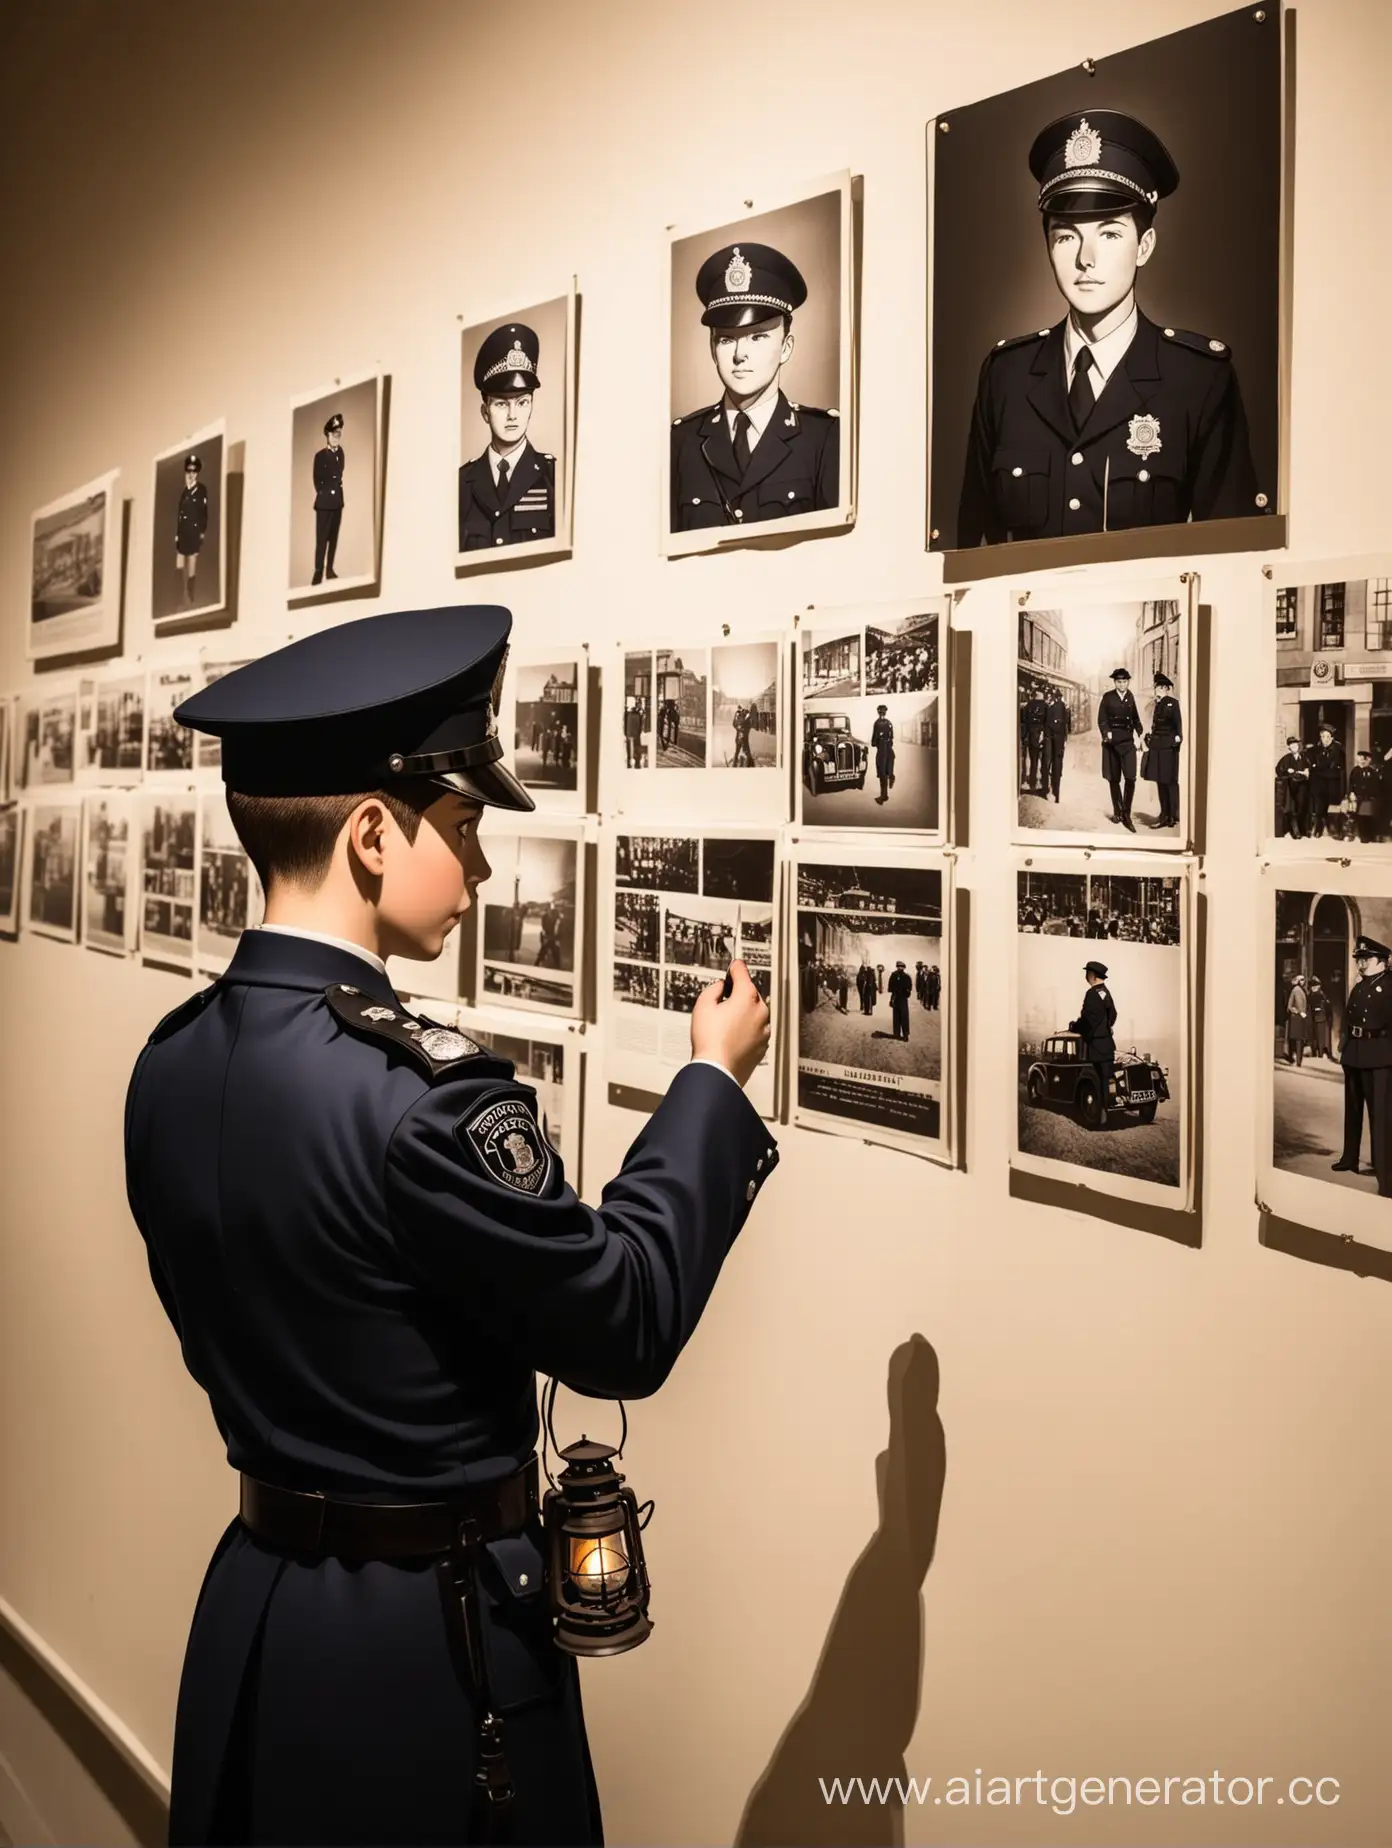 Мальчик в костюме британского полицейского середины 20 века ночью с фонарём, разглядывающий фотографии на стене